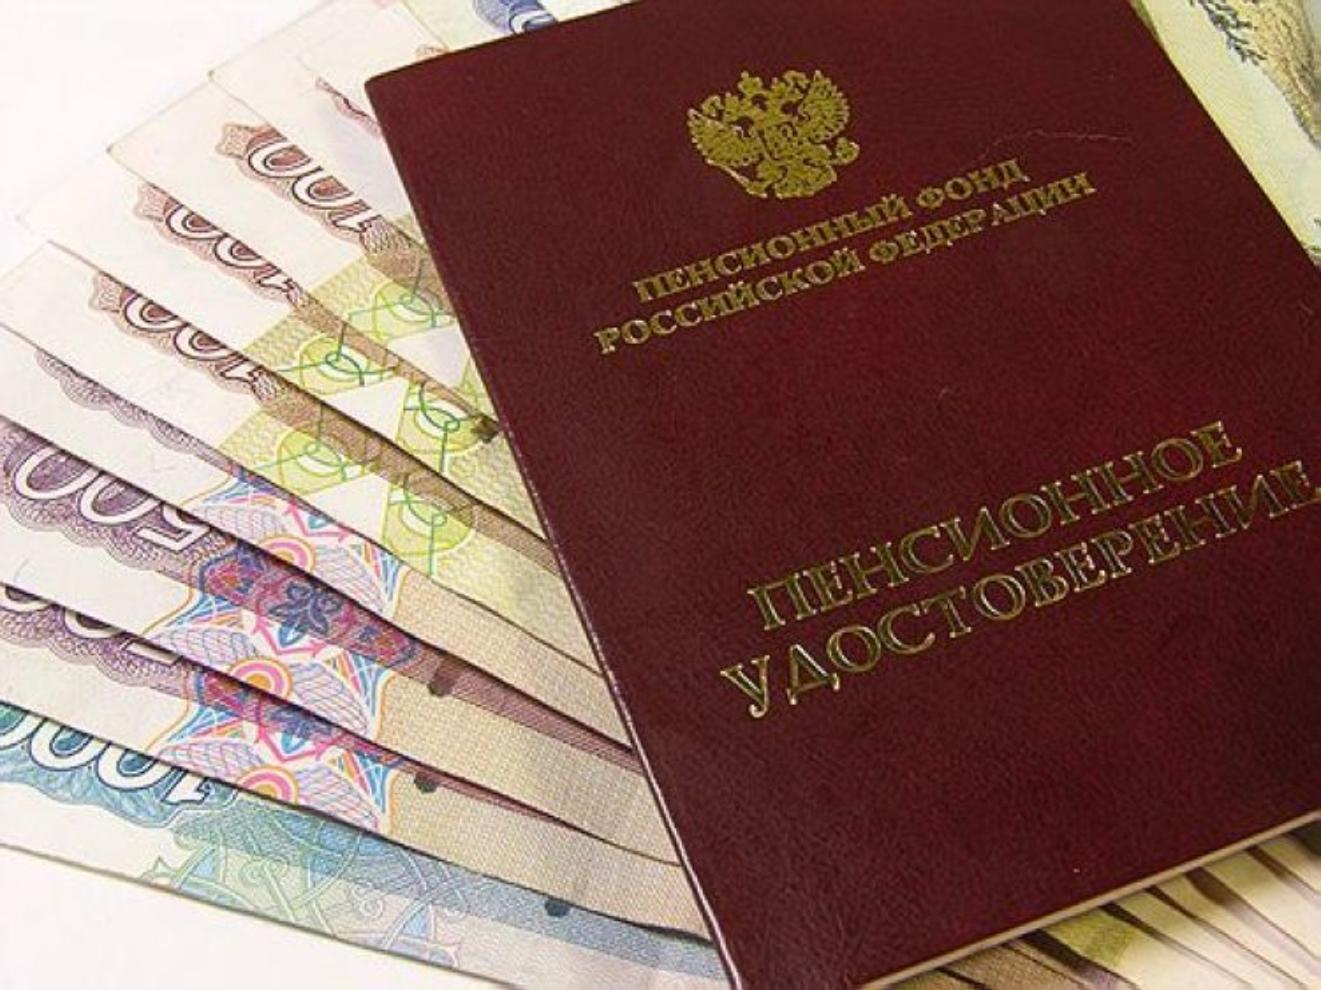 643 жителя Алтайского края претендуют  на беззаявительный перерасчет накопительных пенсий